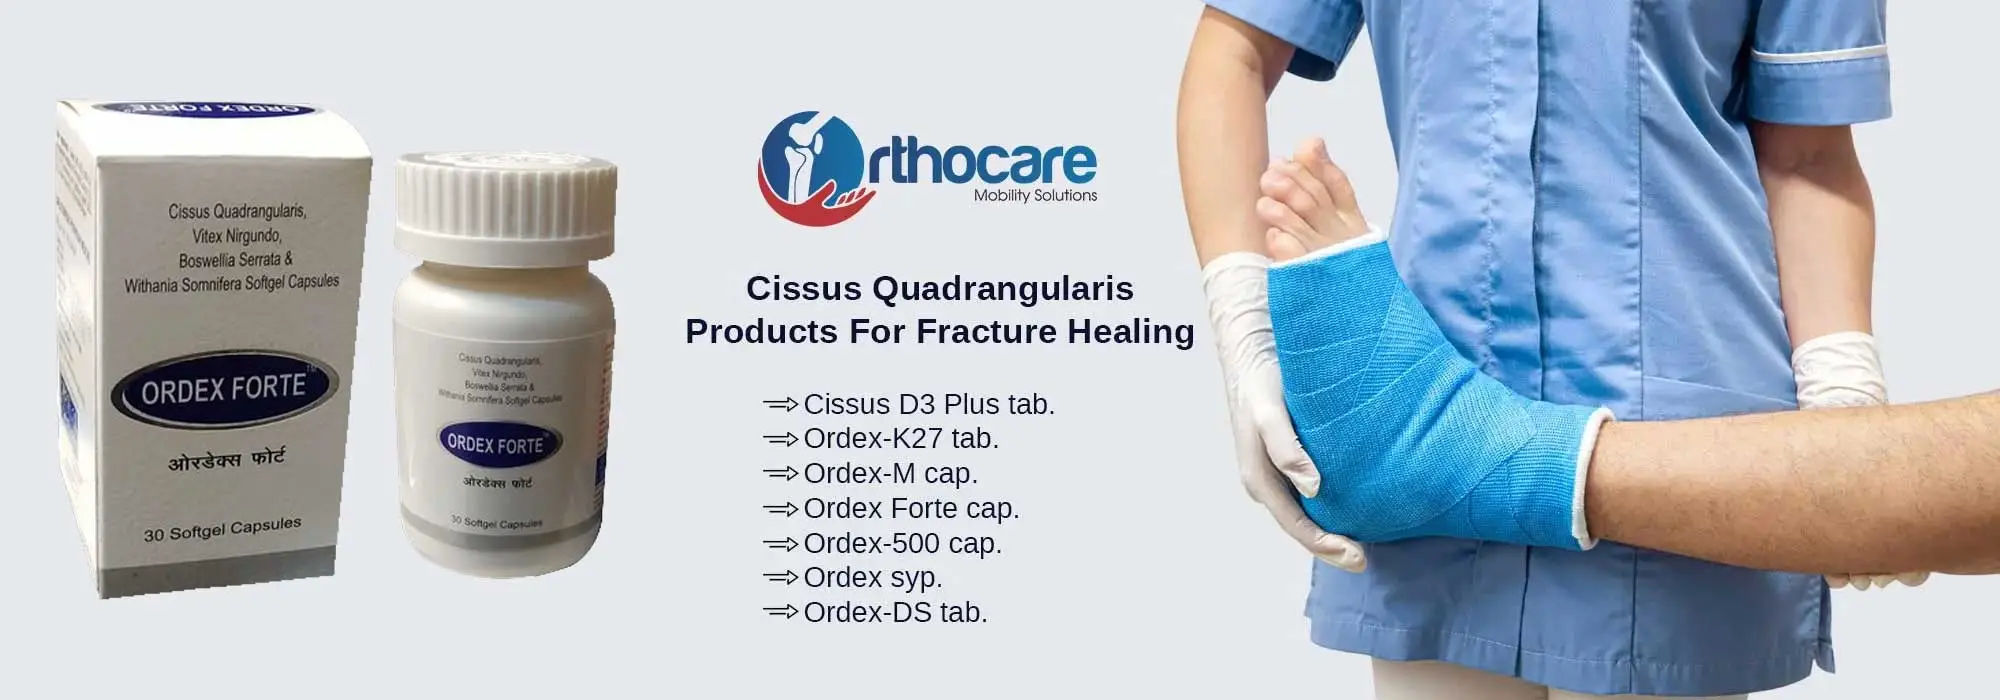 Cissus Quadrangularis Products For Fracture Healing Suppliers in West Godavari